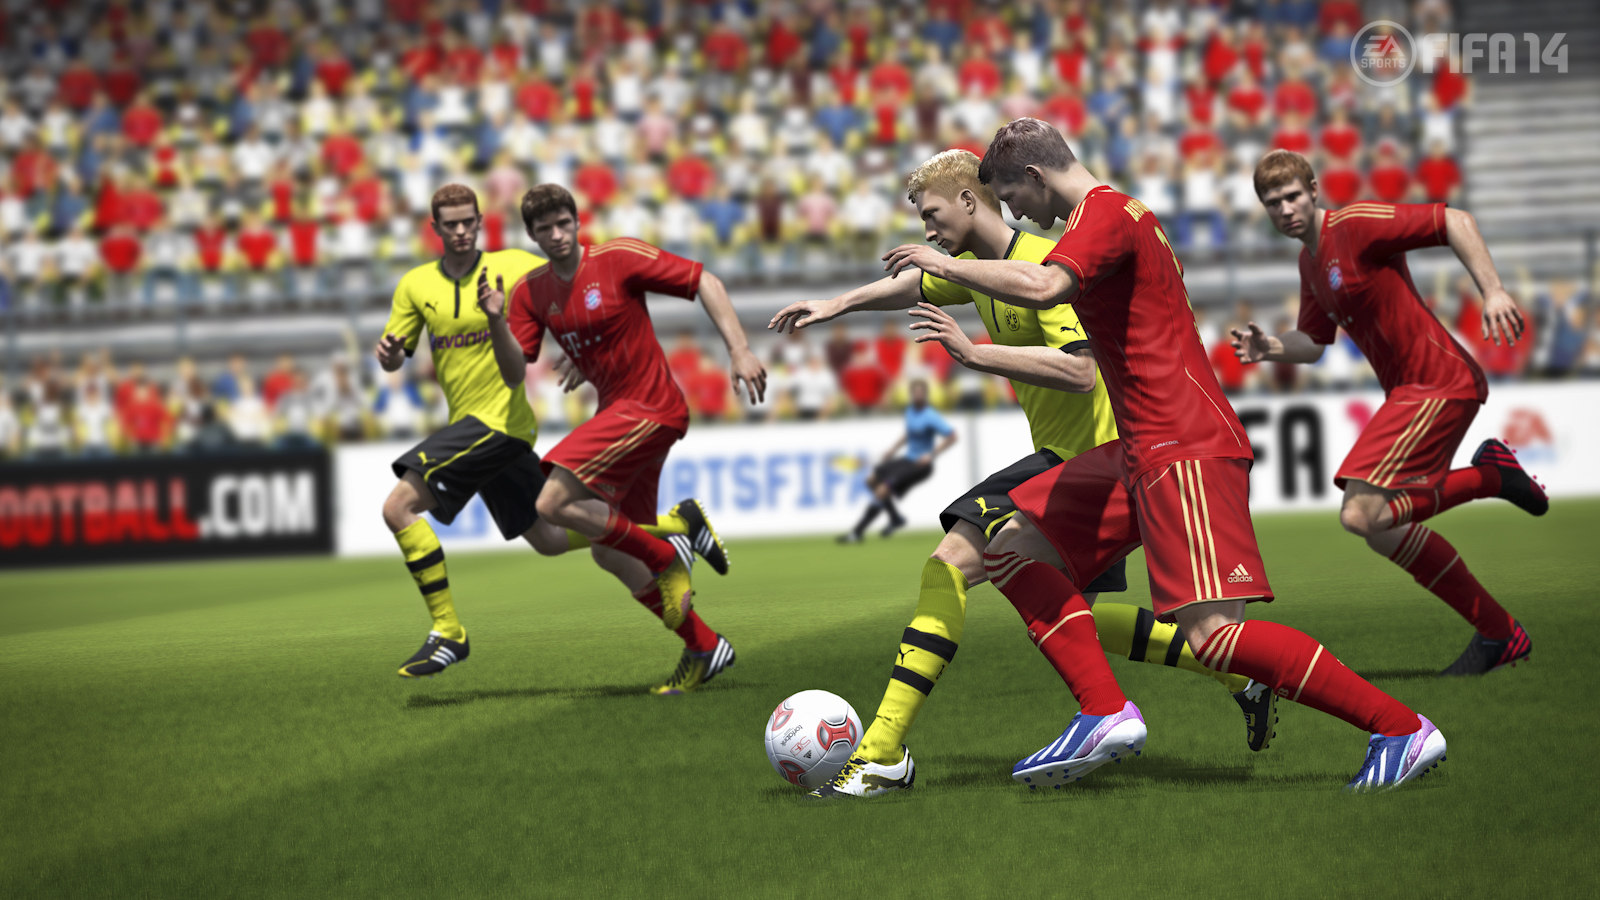 FIFA 14 uscita PS3, Xbox 360 e PC il 27 settembre 2013